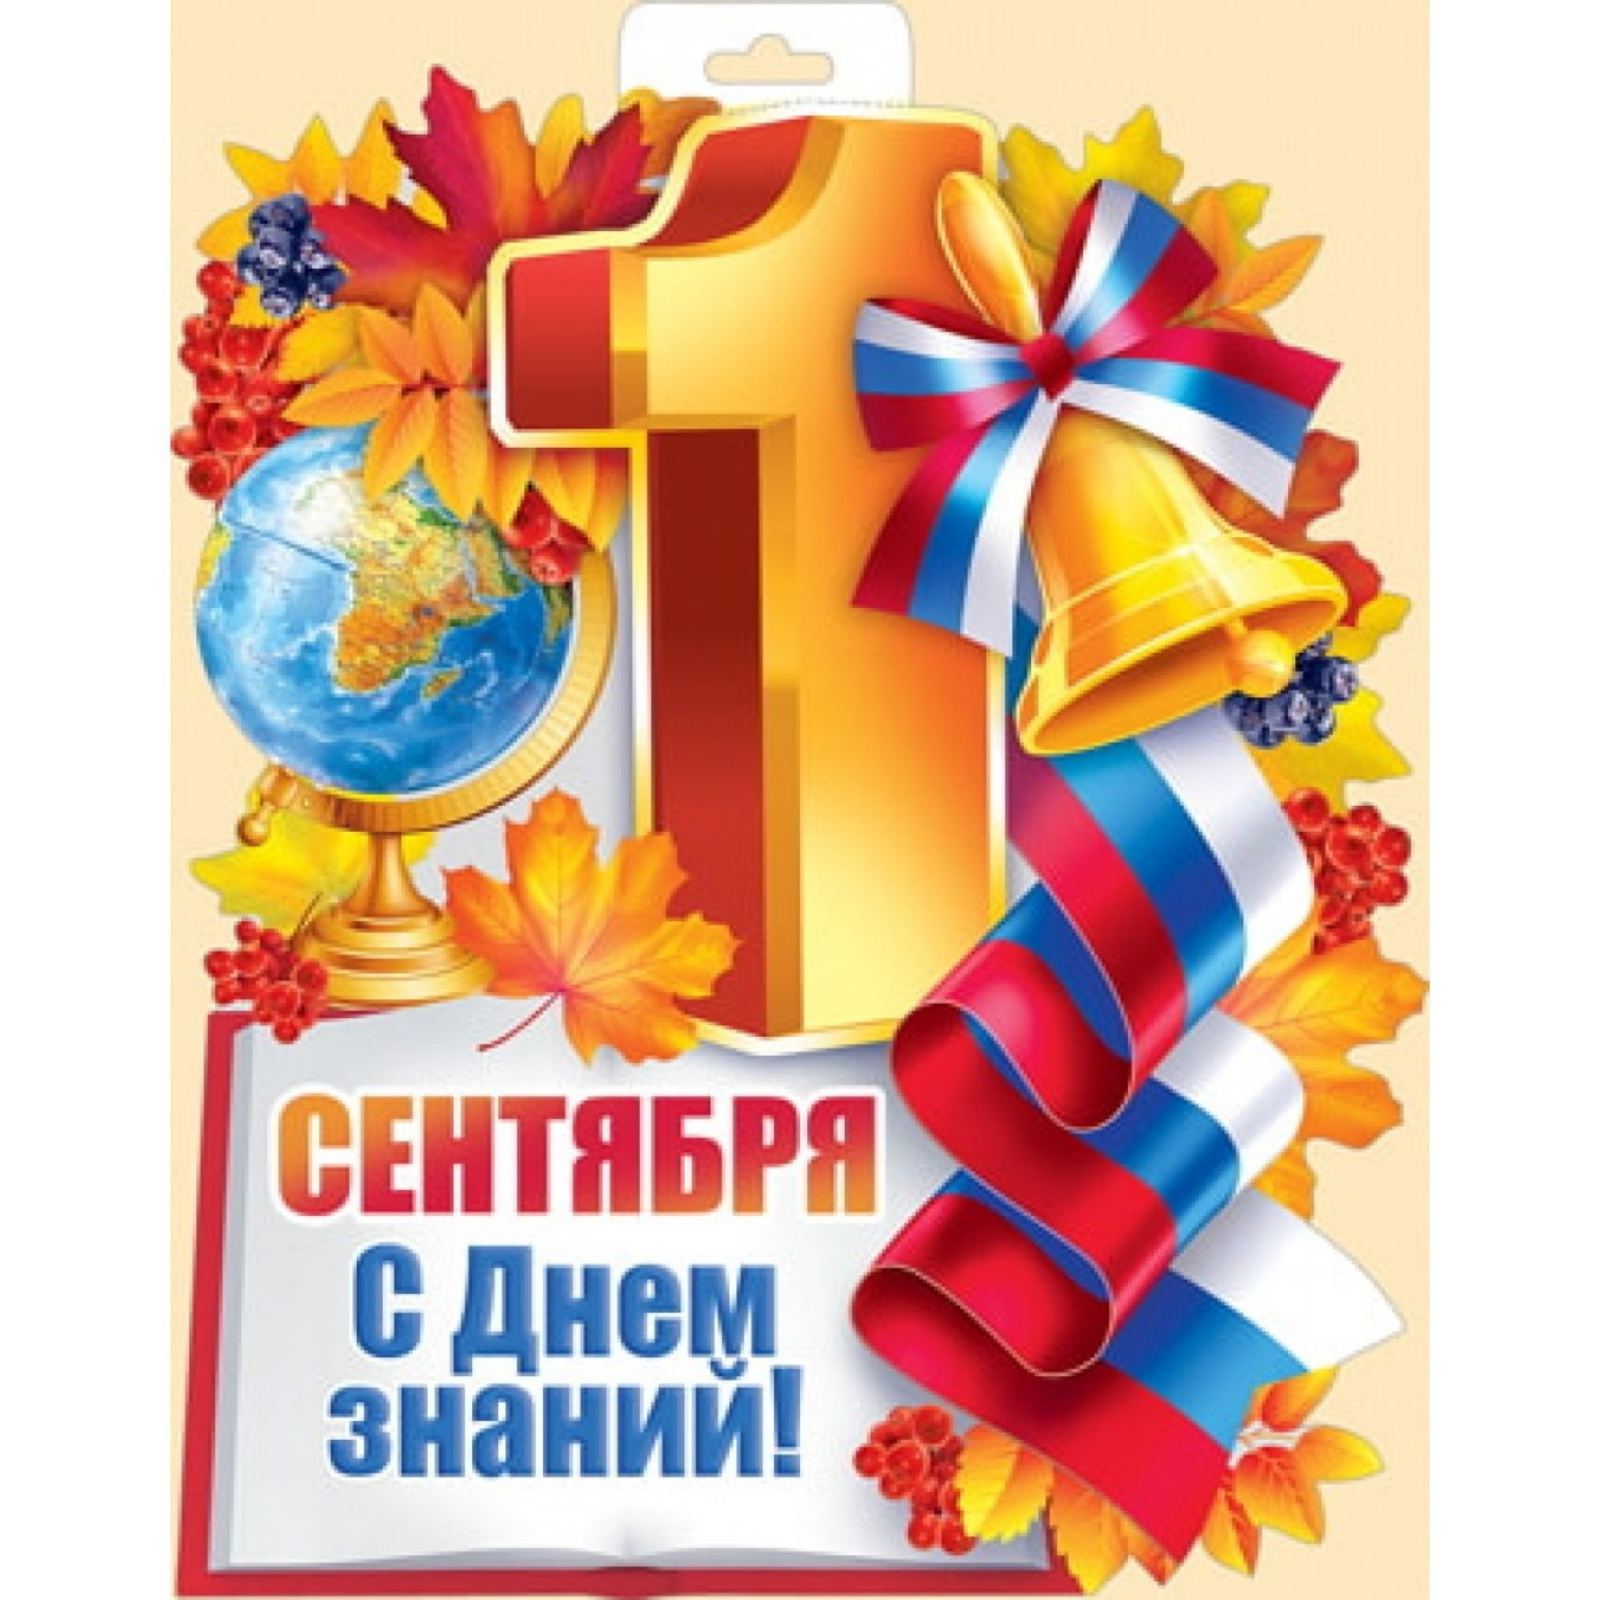 Поздравление с Днем знаний от администрации МБОУ СОШ №22 имени Г.Ф. Пономарева.